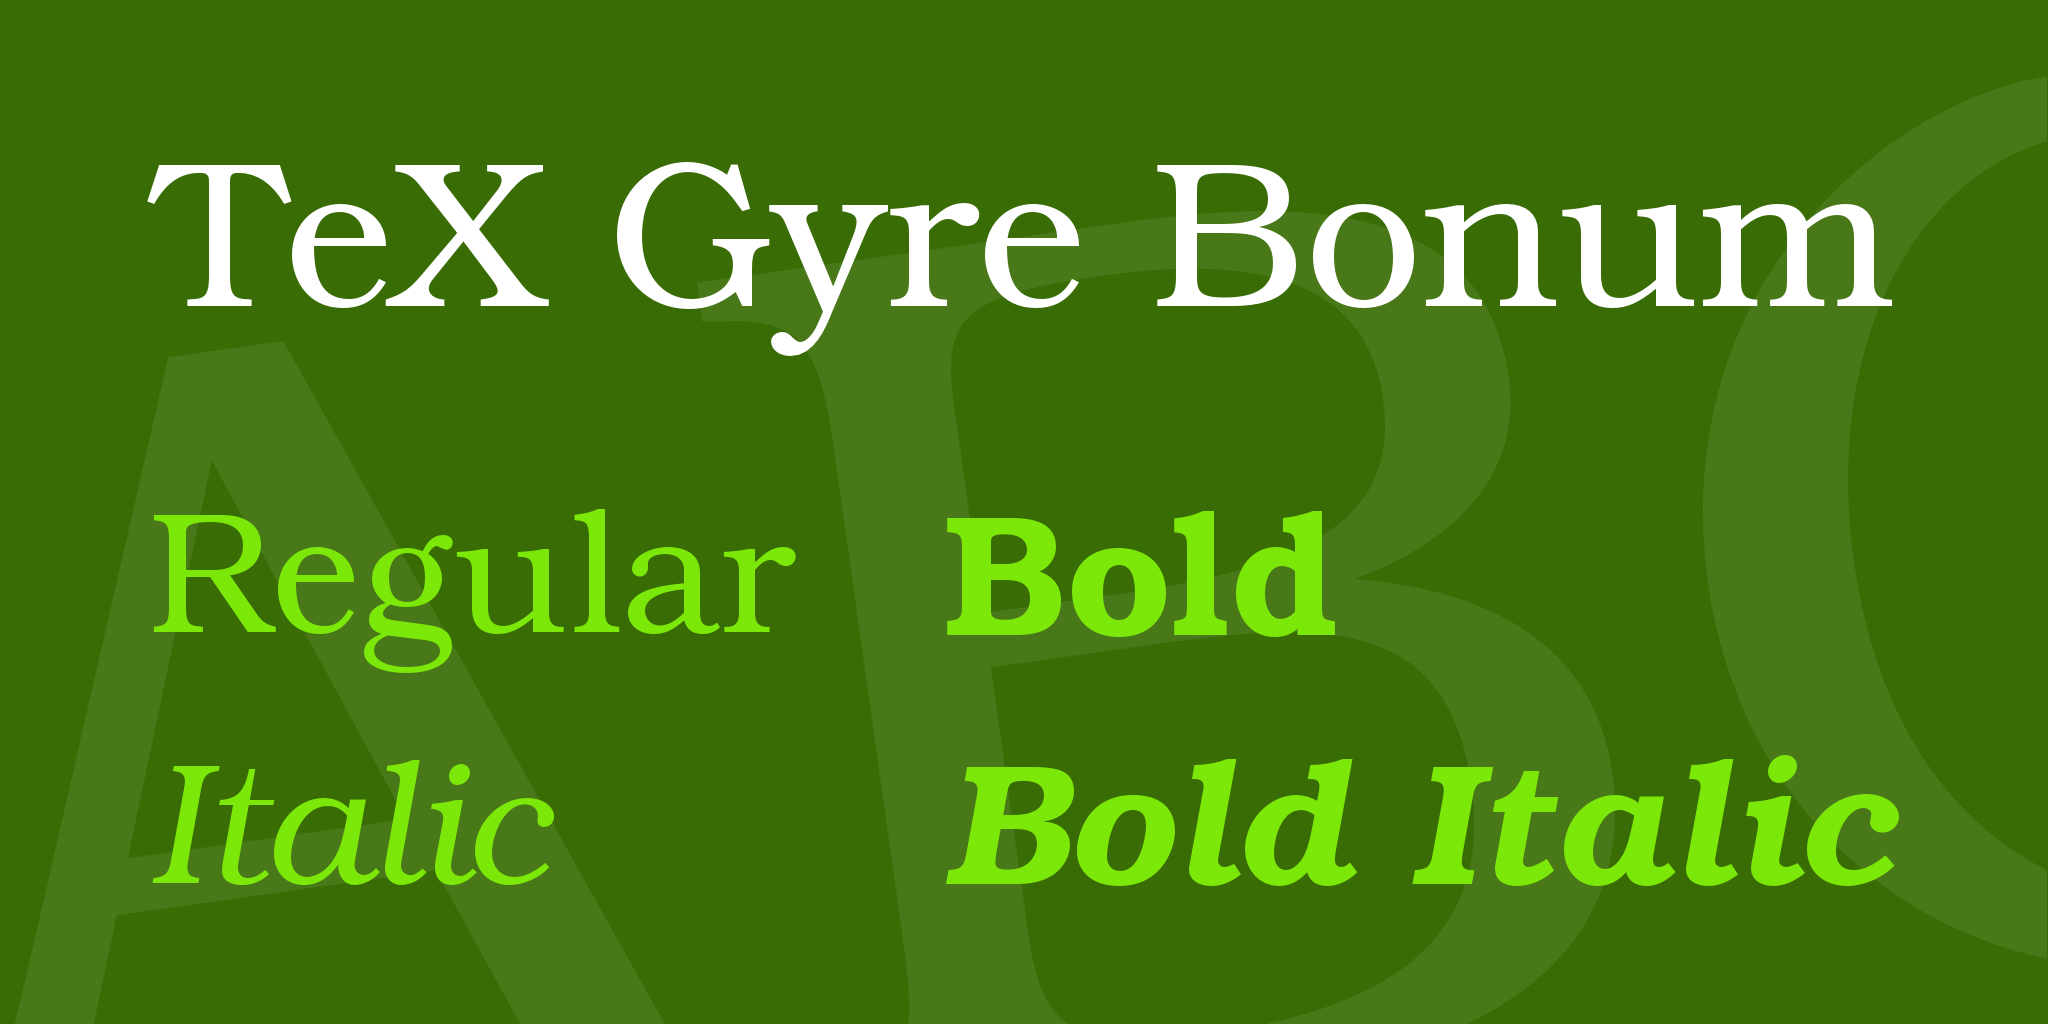 Tex Gyre Bonum